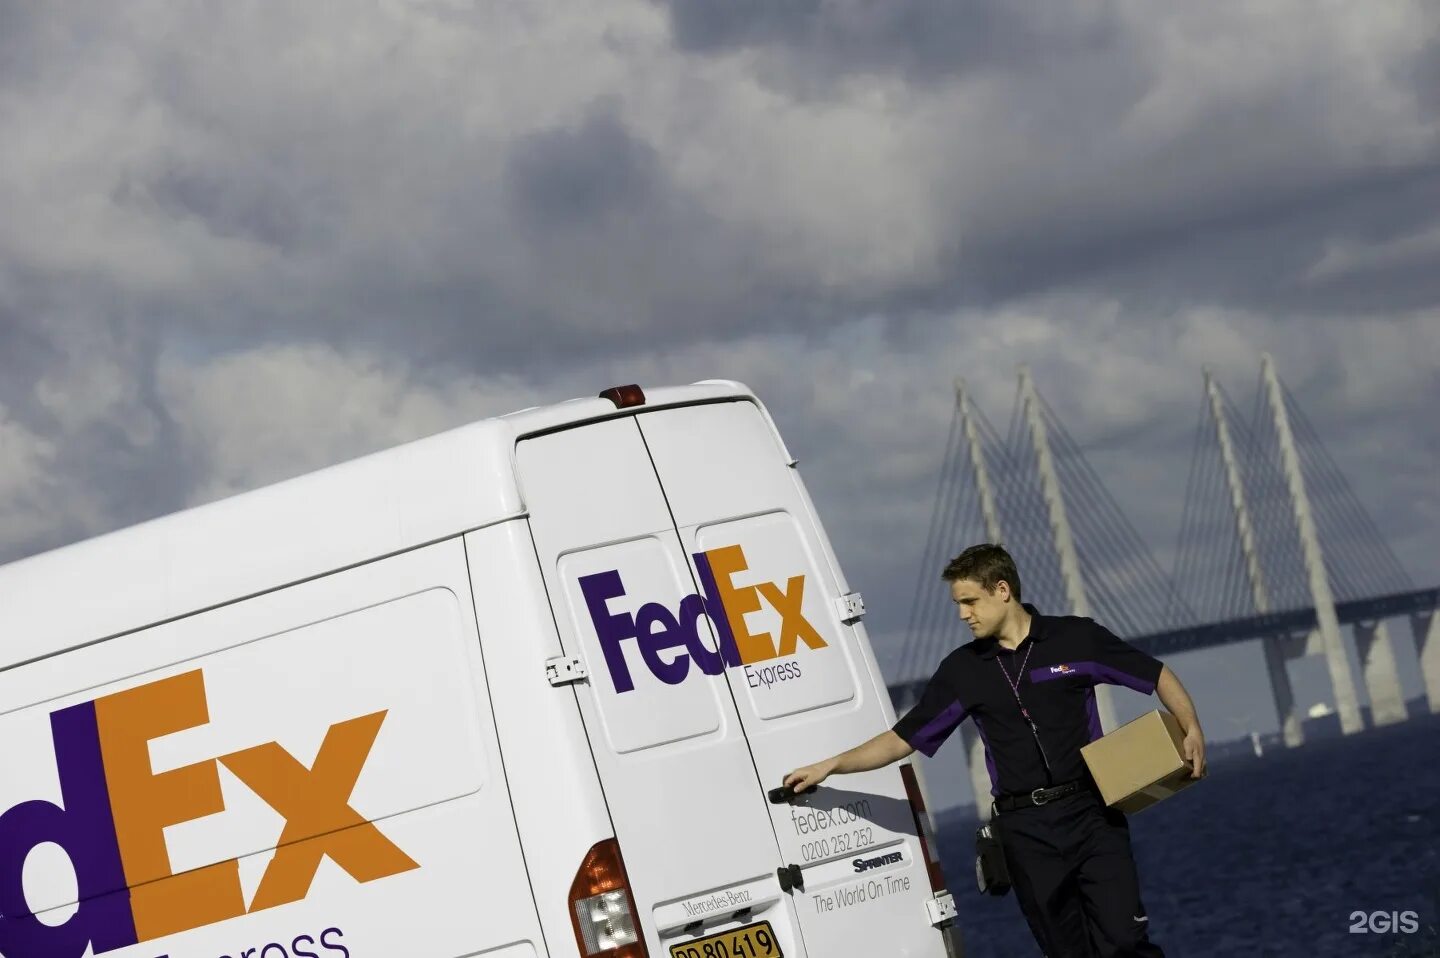 Служба доставки спб. FEDEX. FEDEX Express. FEDEX логотип. Fed exтранспортная компания.